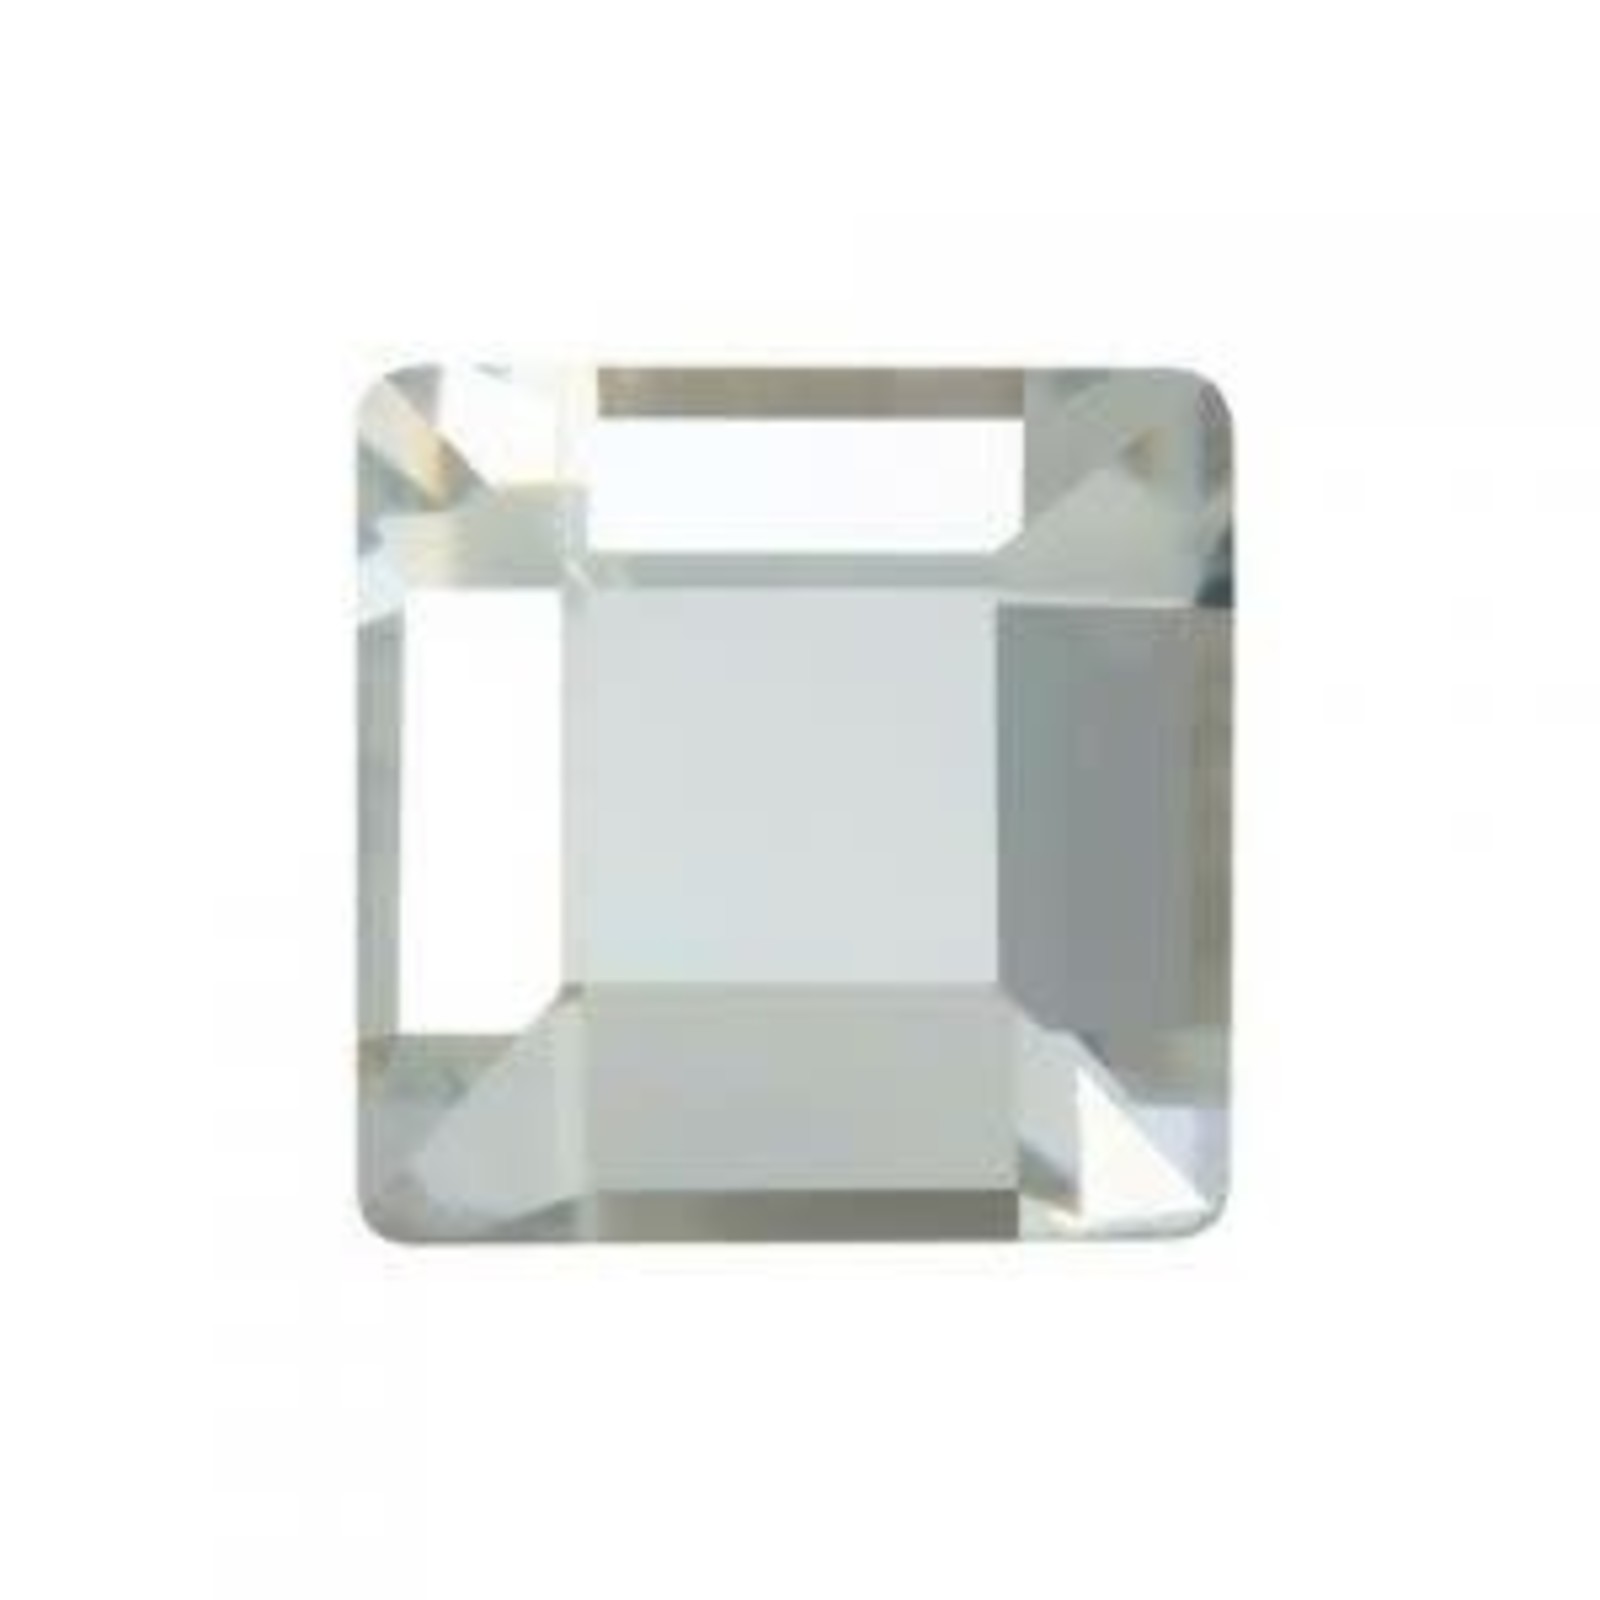 Swarovski Swarovski Square Crystal 4mm